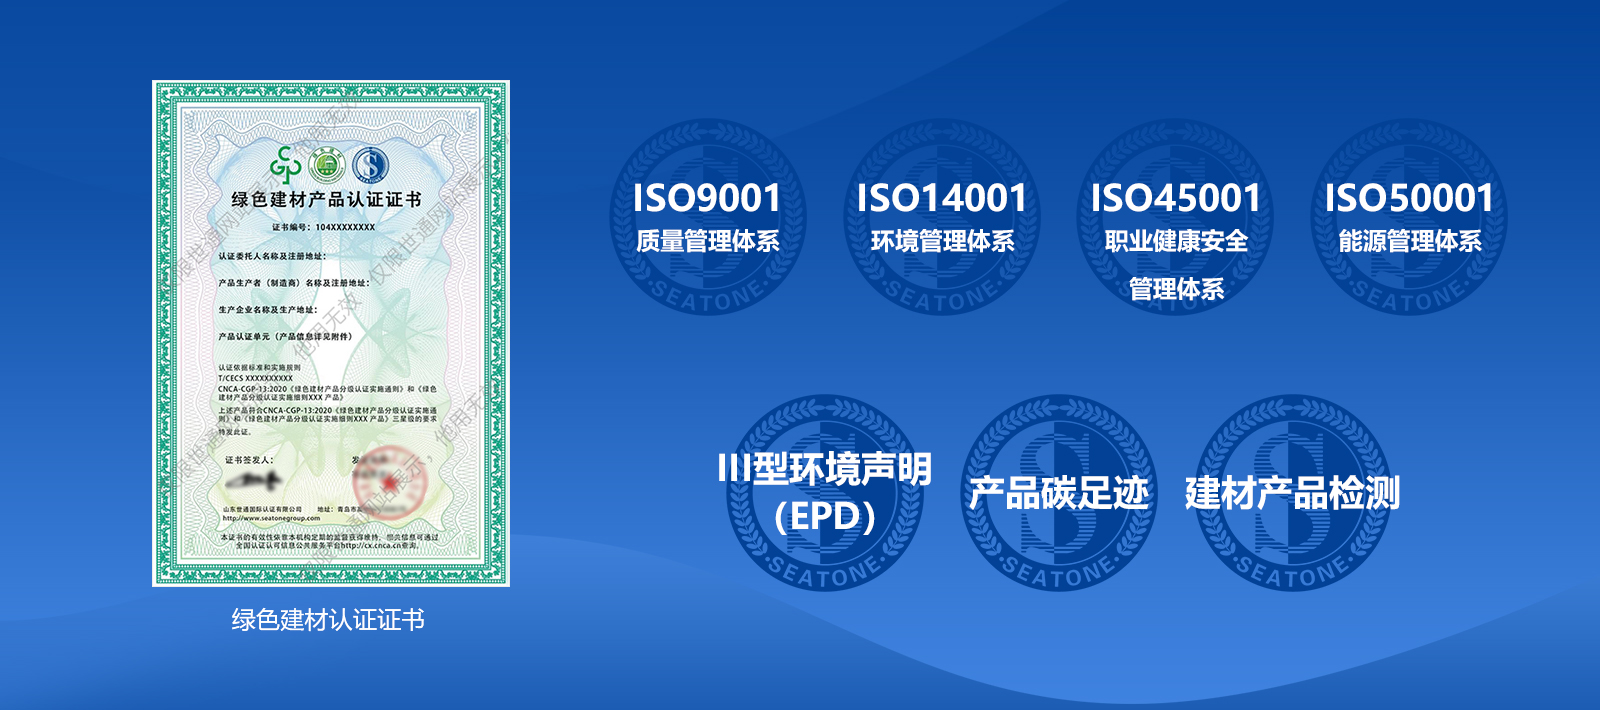 鸿运国际认证綠色建材產品認證內容.jpg